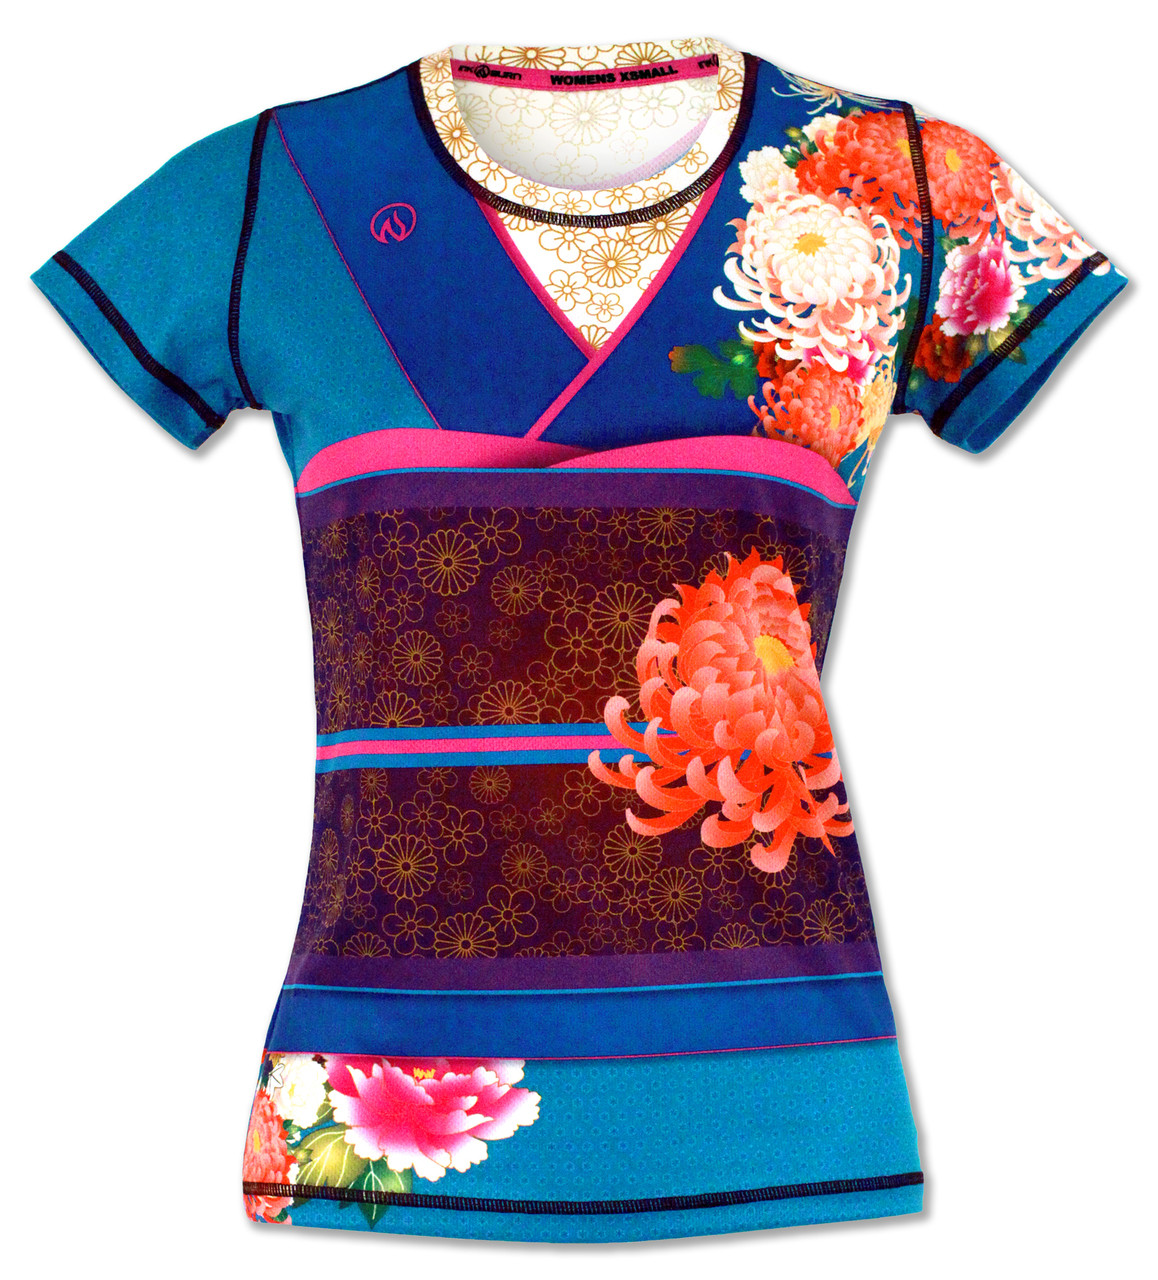 Women's Kimono Tech Shirt for Running, Gym & Crossfit